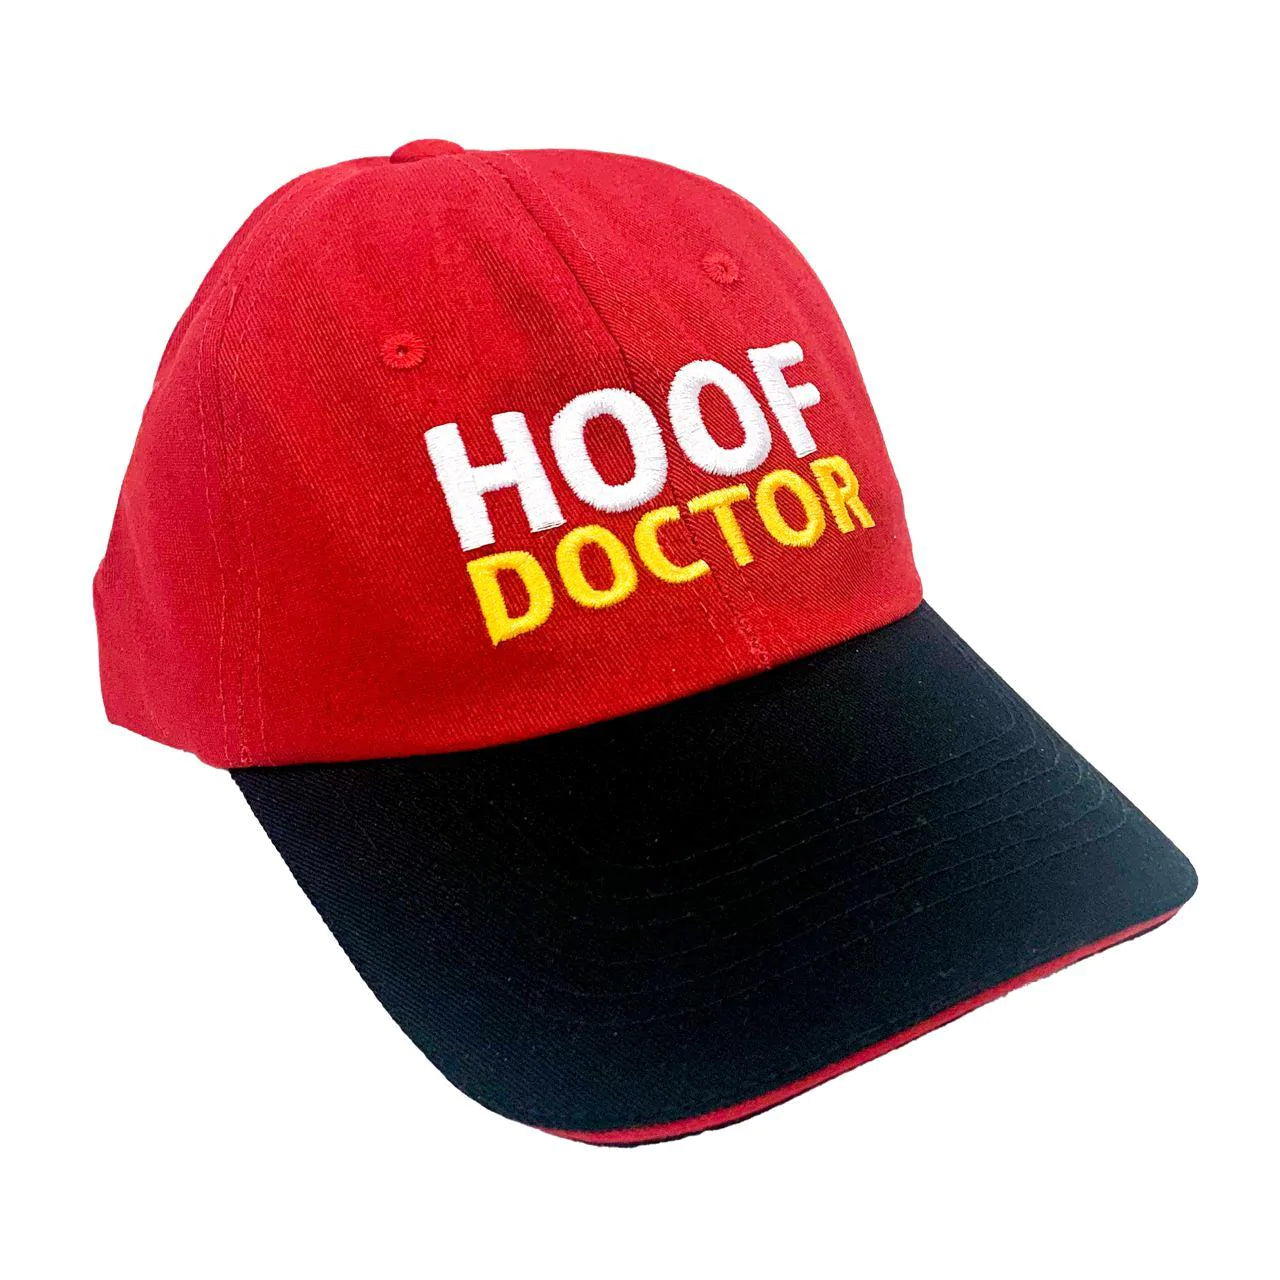 Hoof Doctor Farrier Cap - Equine One